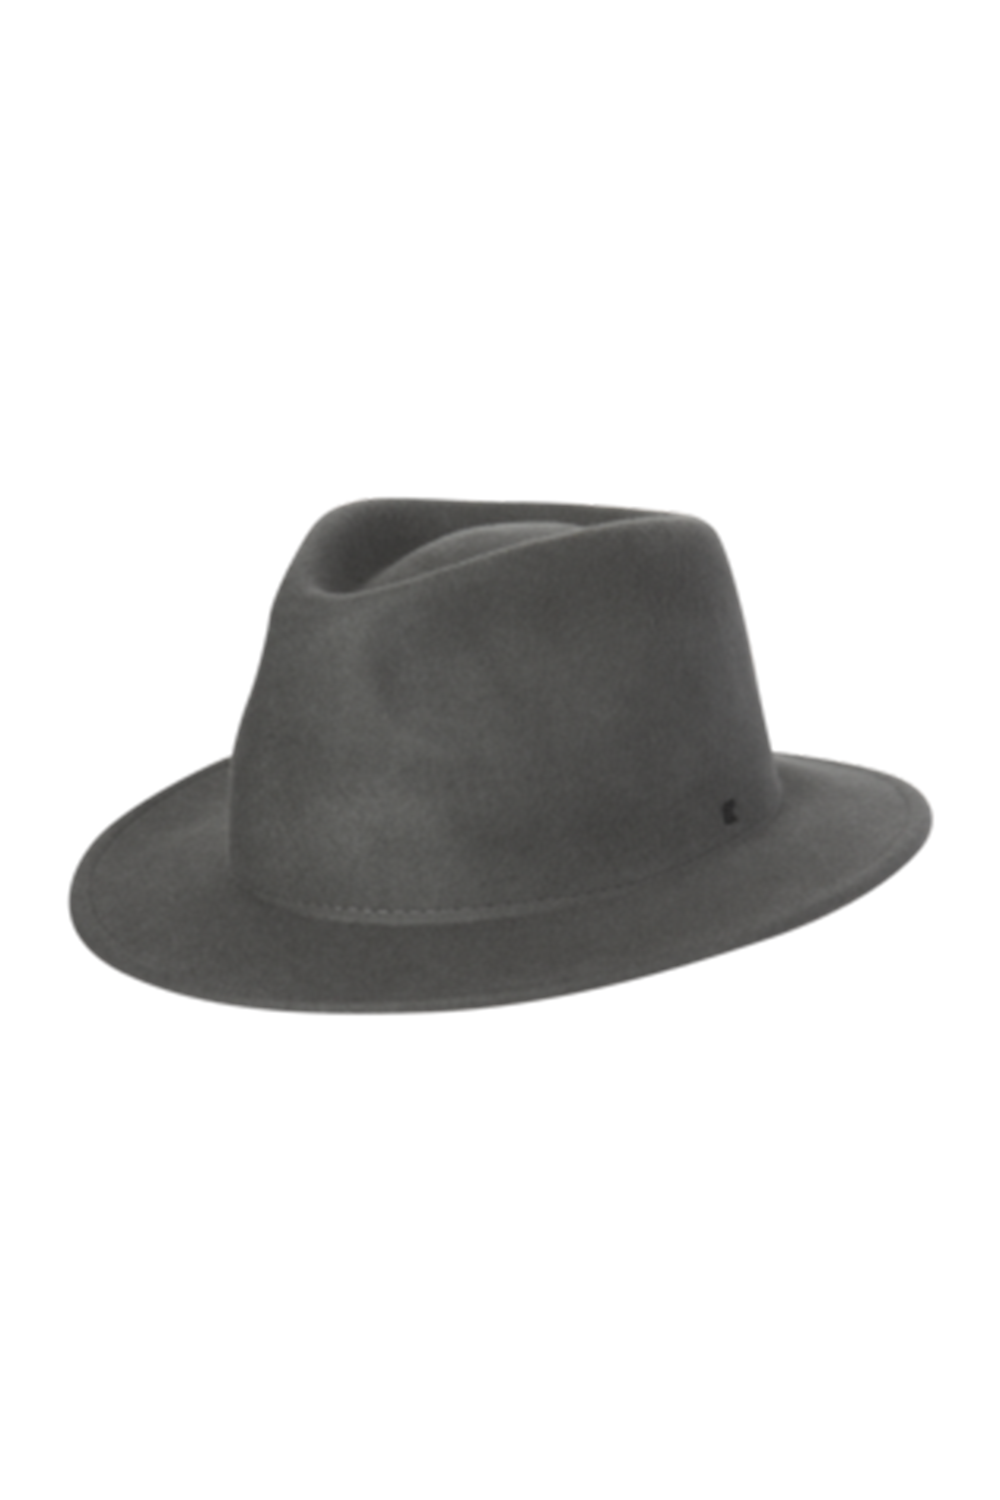 SIDEWALK SALE ITEM - Mens Fedora Hat - Maestro Grey